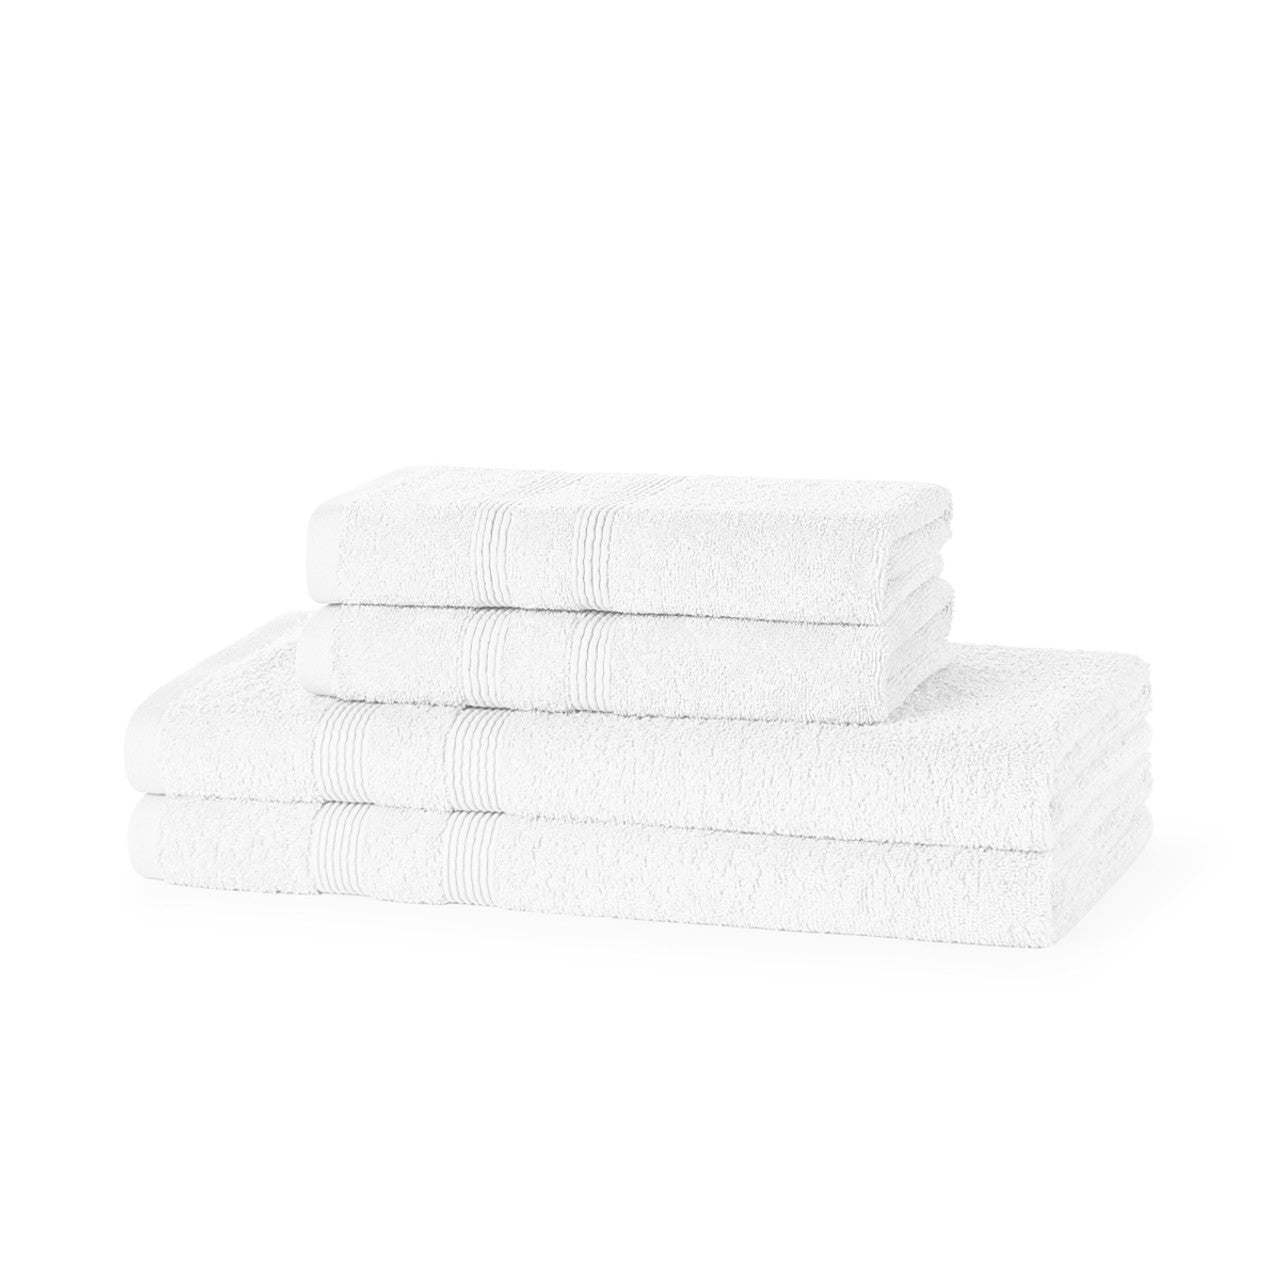 4 Piece 500GSM Towel Bale- 100% Cotton